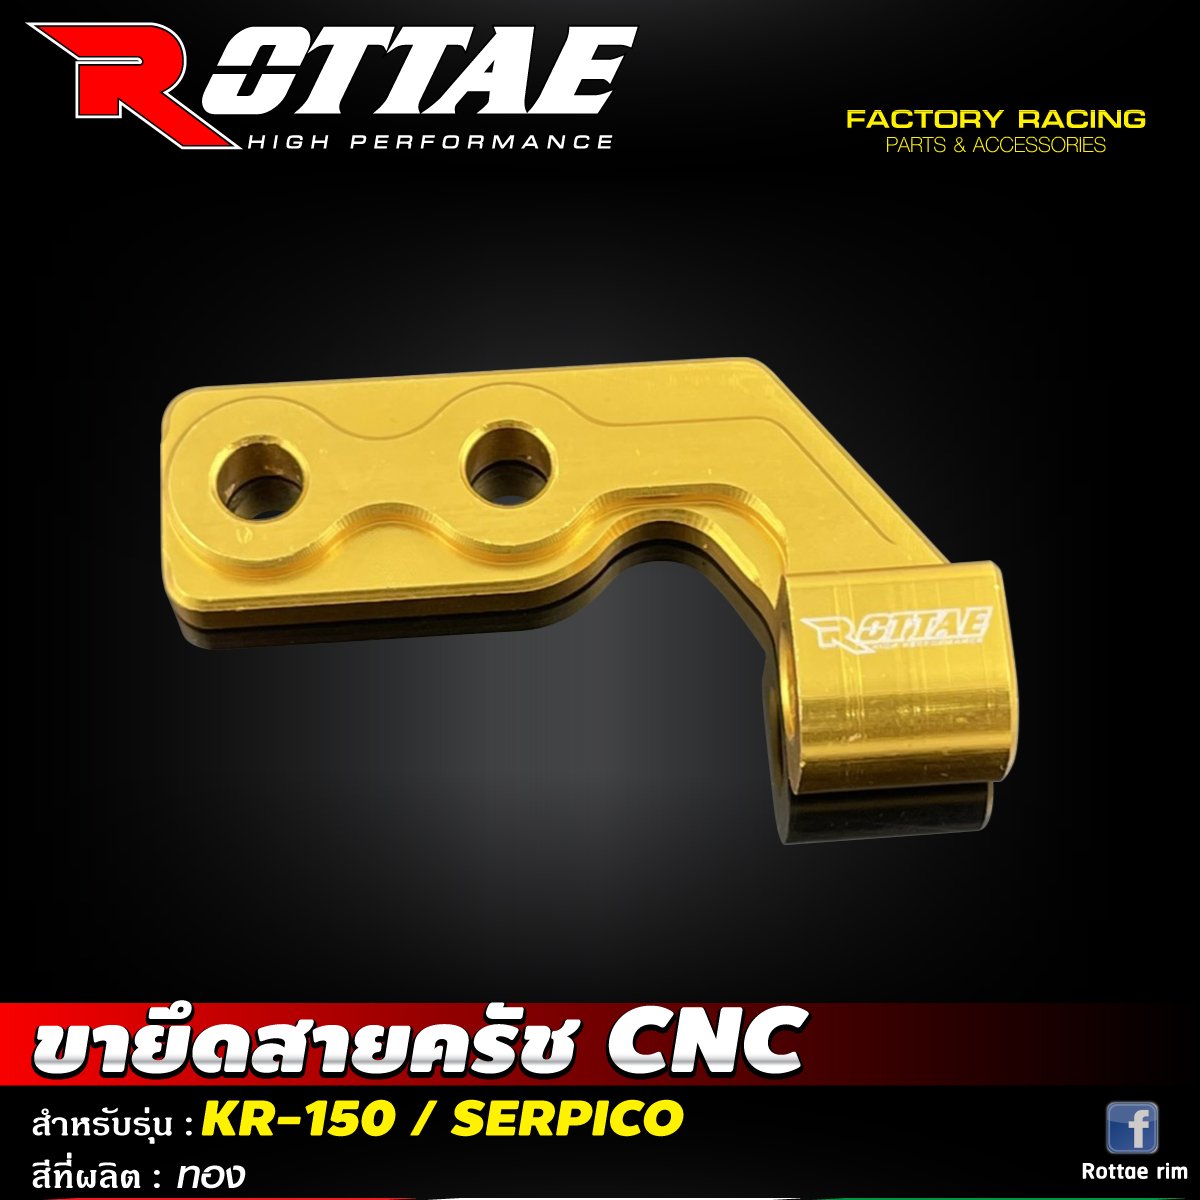 ขายึดสายครัช CNC #KR-150 / SERPICO ROTTAE สี ทอง